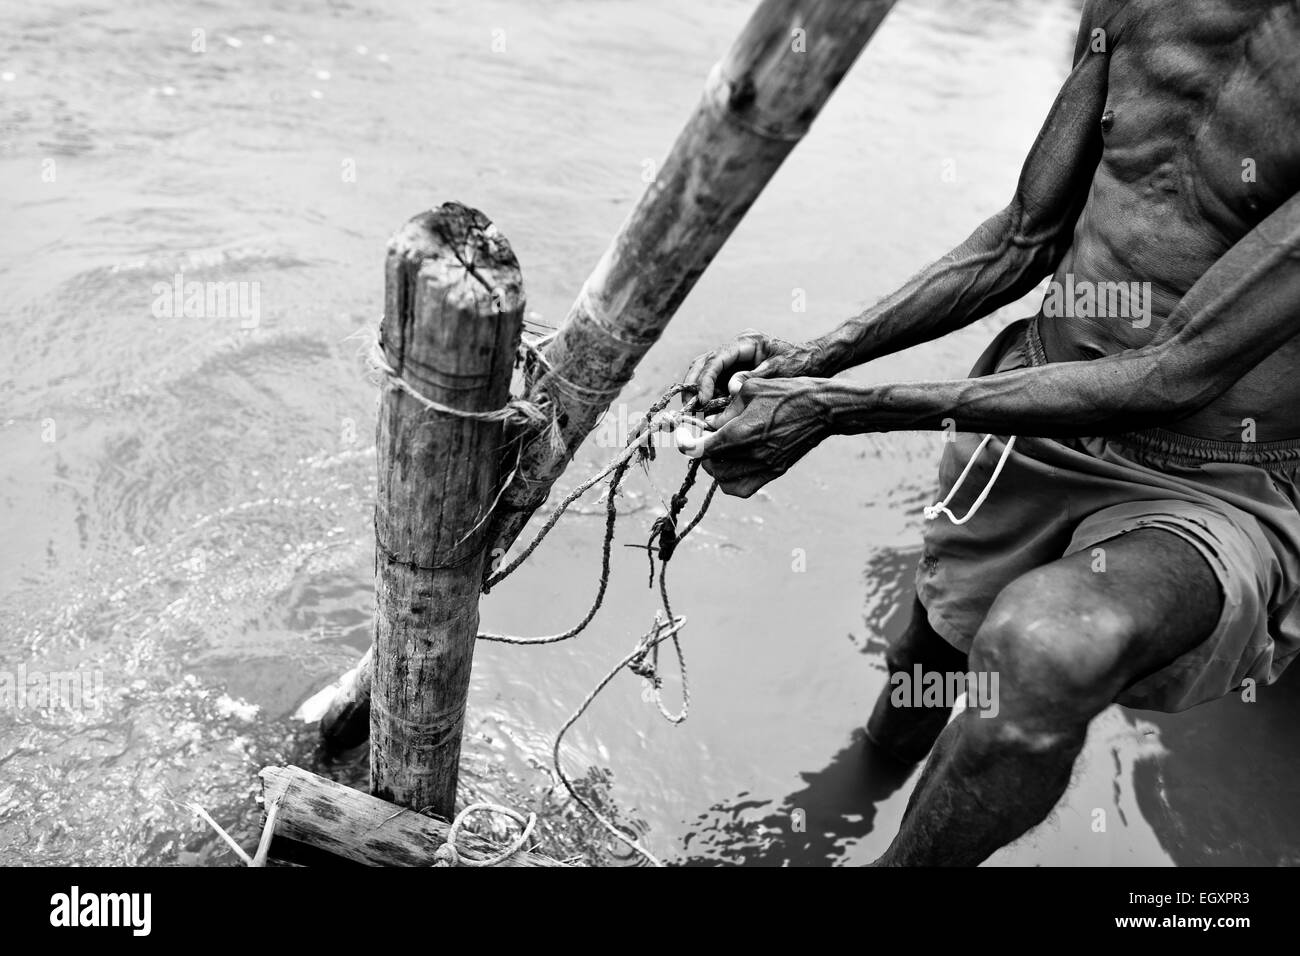 Un sable colombien miner travaille sur le renforcement de la rive de la rivière La Vieja à Cartago, Colombie. Banque D'Images